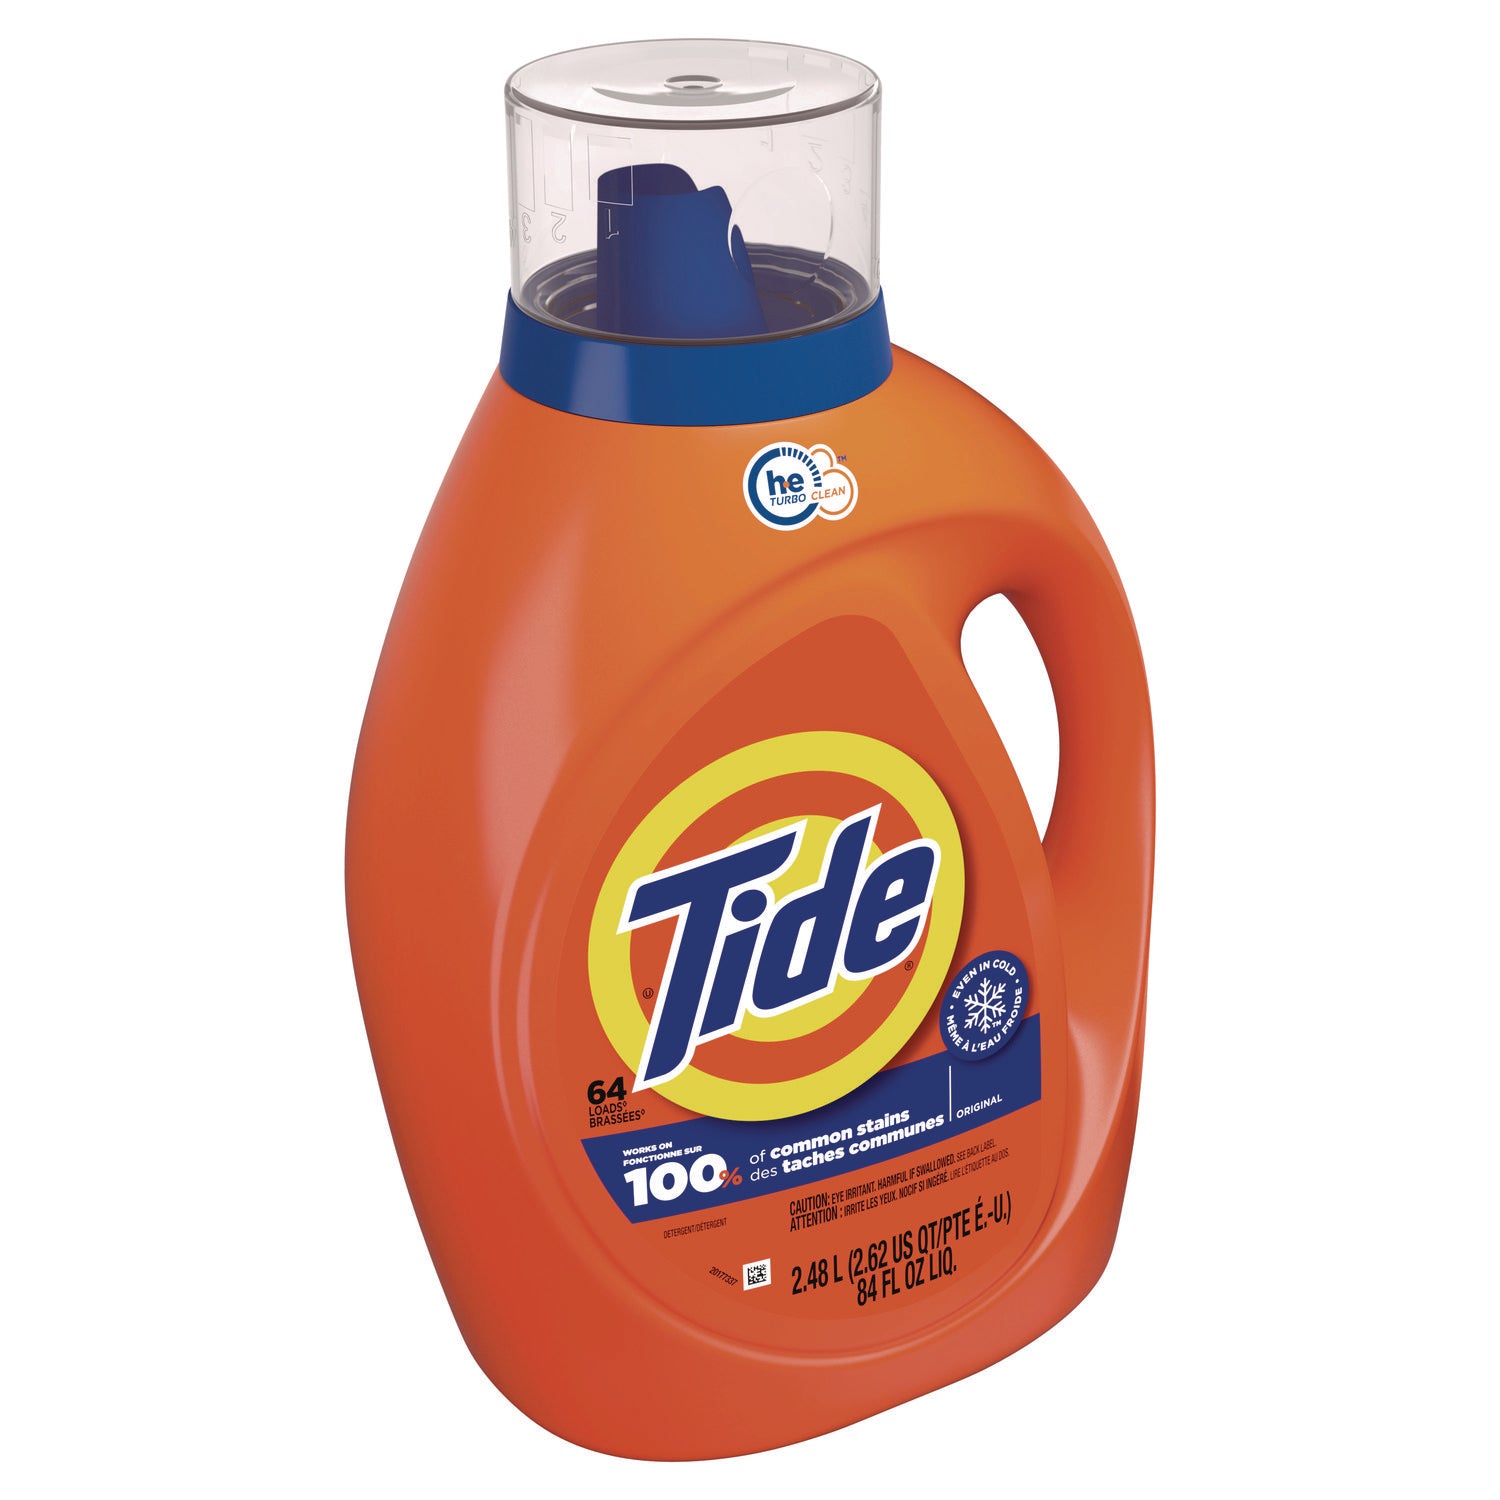 Tide Liquid Laundry Detergent - Concentrate - 92 fl oz (2.9 quart) - Original Scent - 1 Bottle - Blue - 2